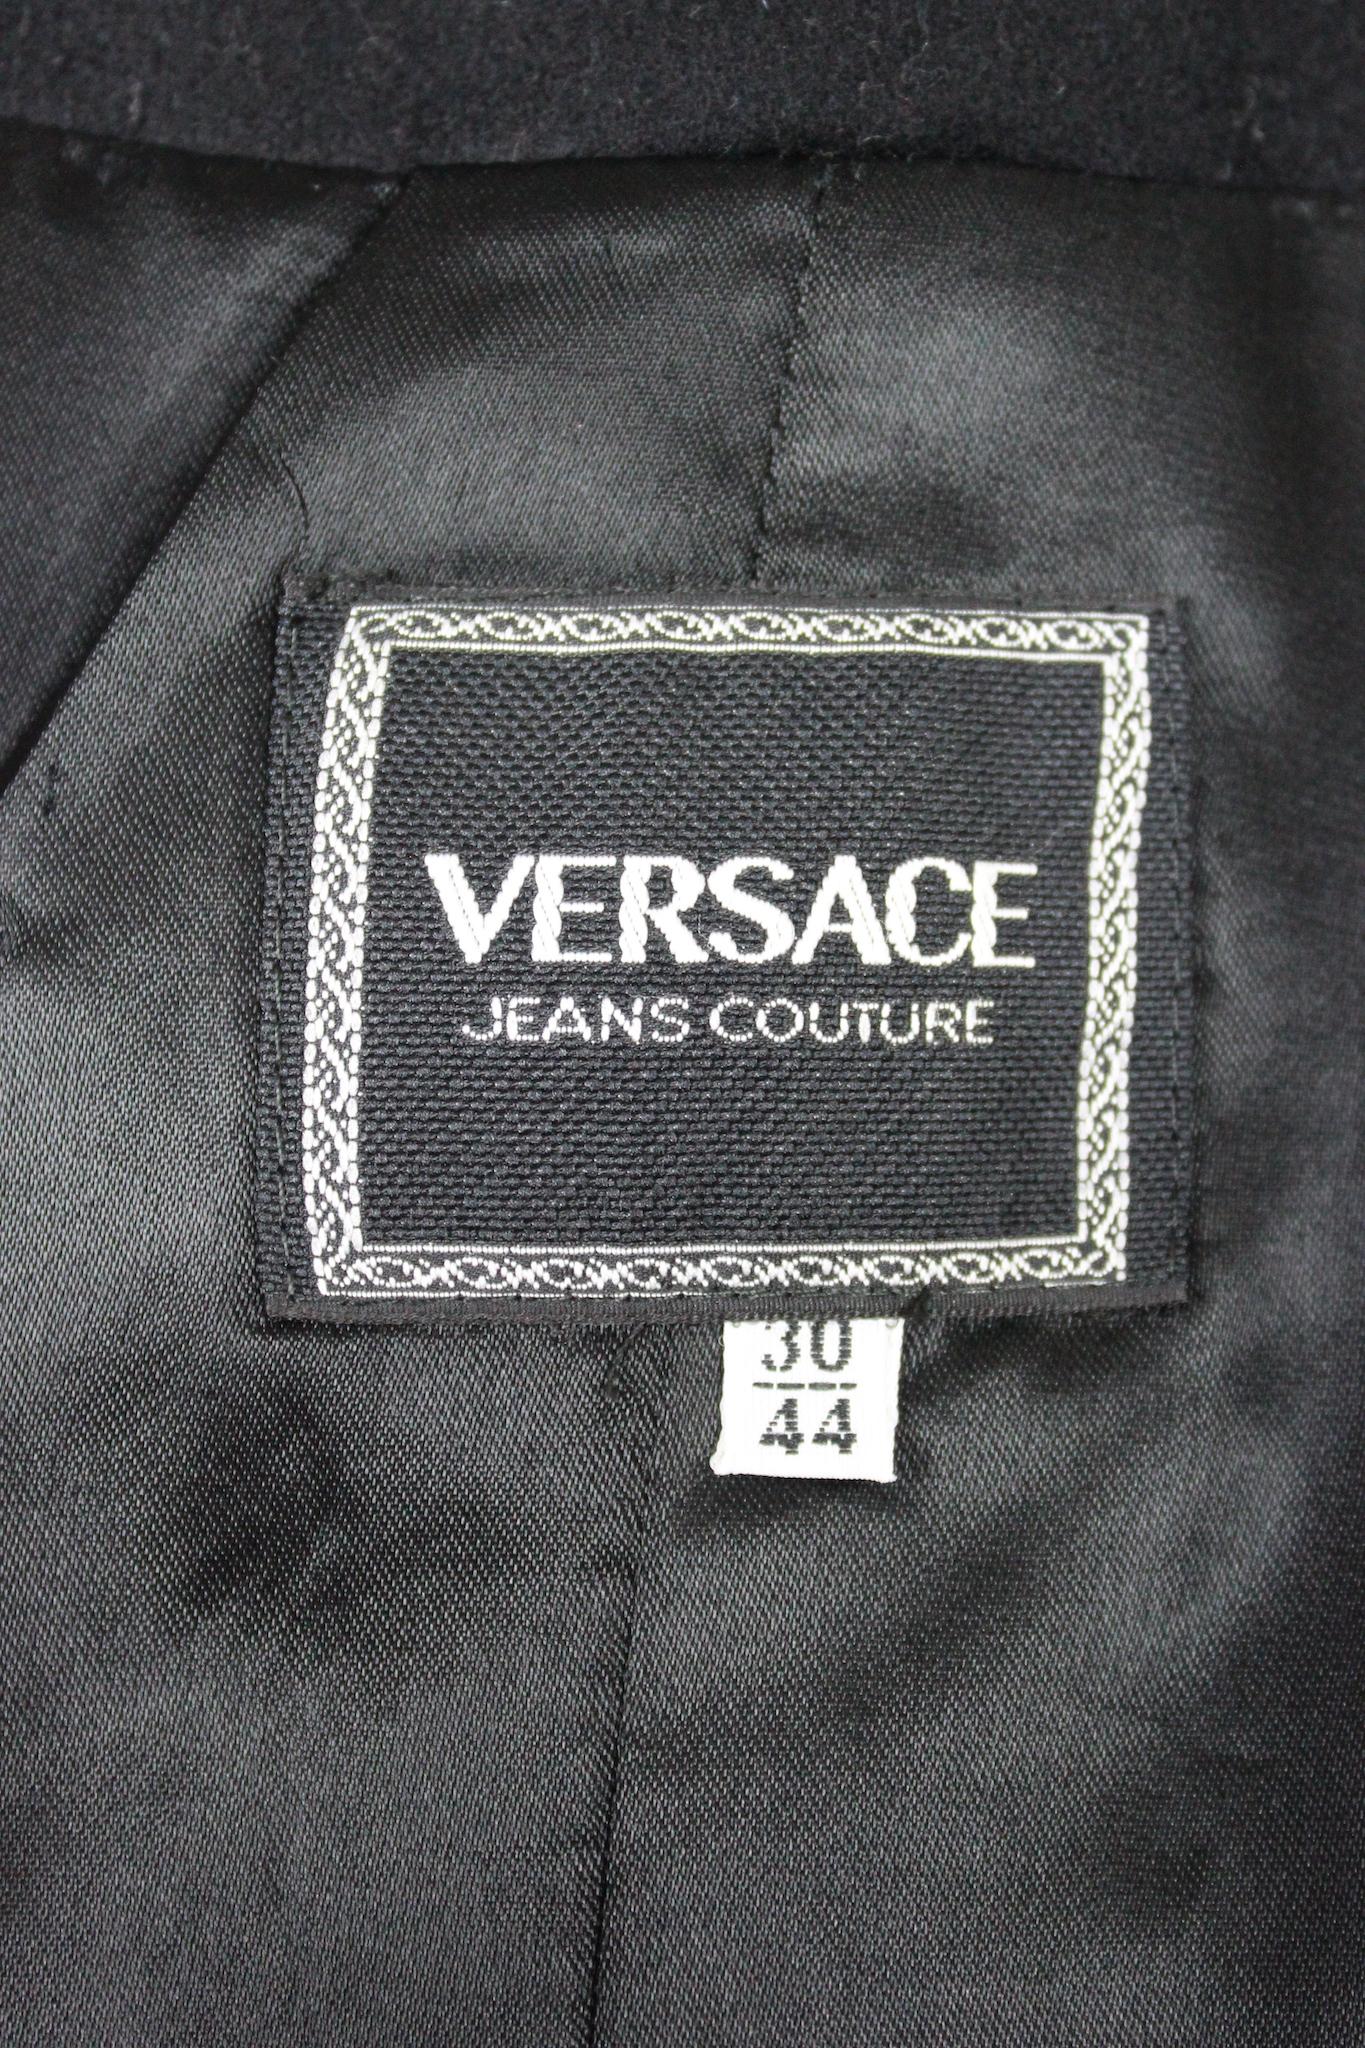 Versace Herringbone Vintage Short Jacket 90s 3